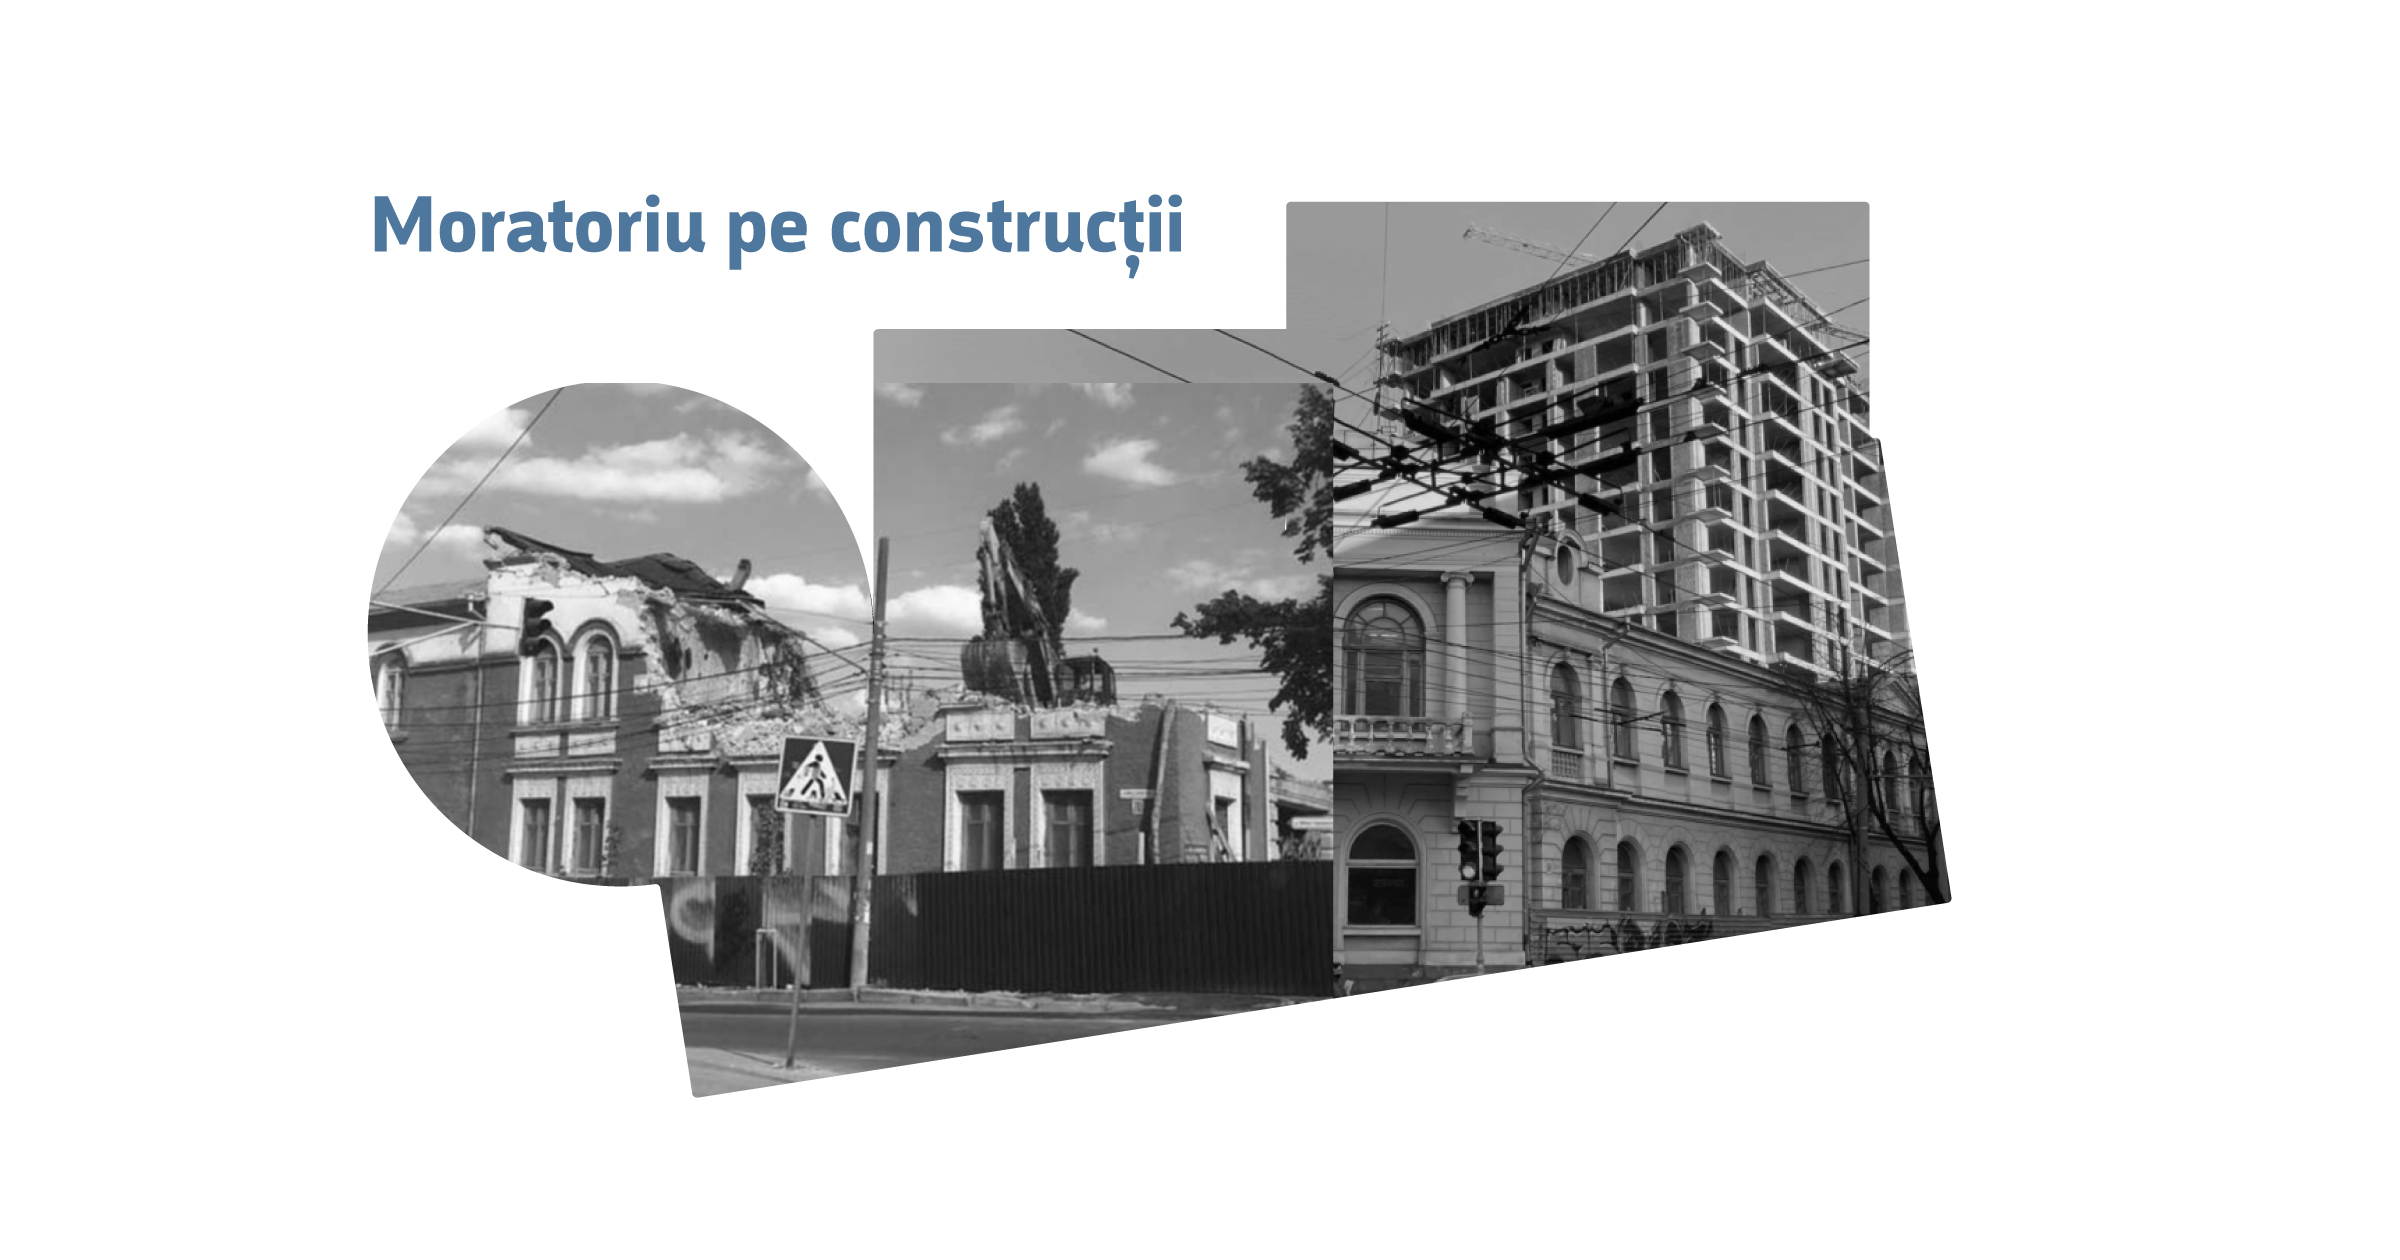 O nouă încercare de stopare a construcțiilor în centrul istoric al orașului Image